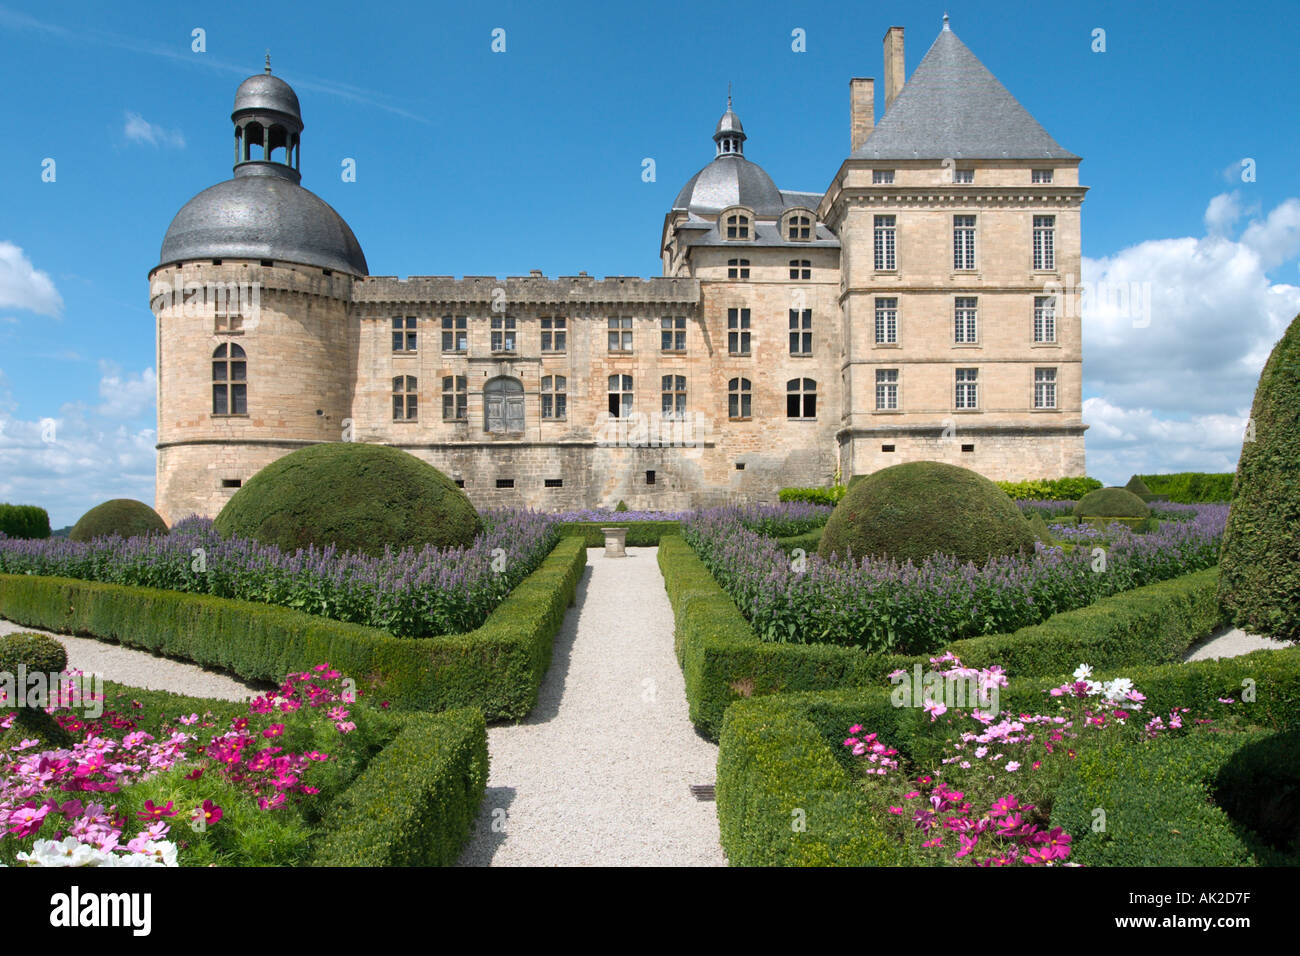 Chateau de Hautefort, Hautefort, Dordogne, France Stock Photo